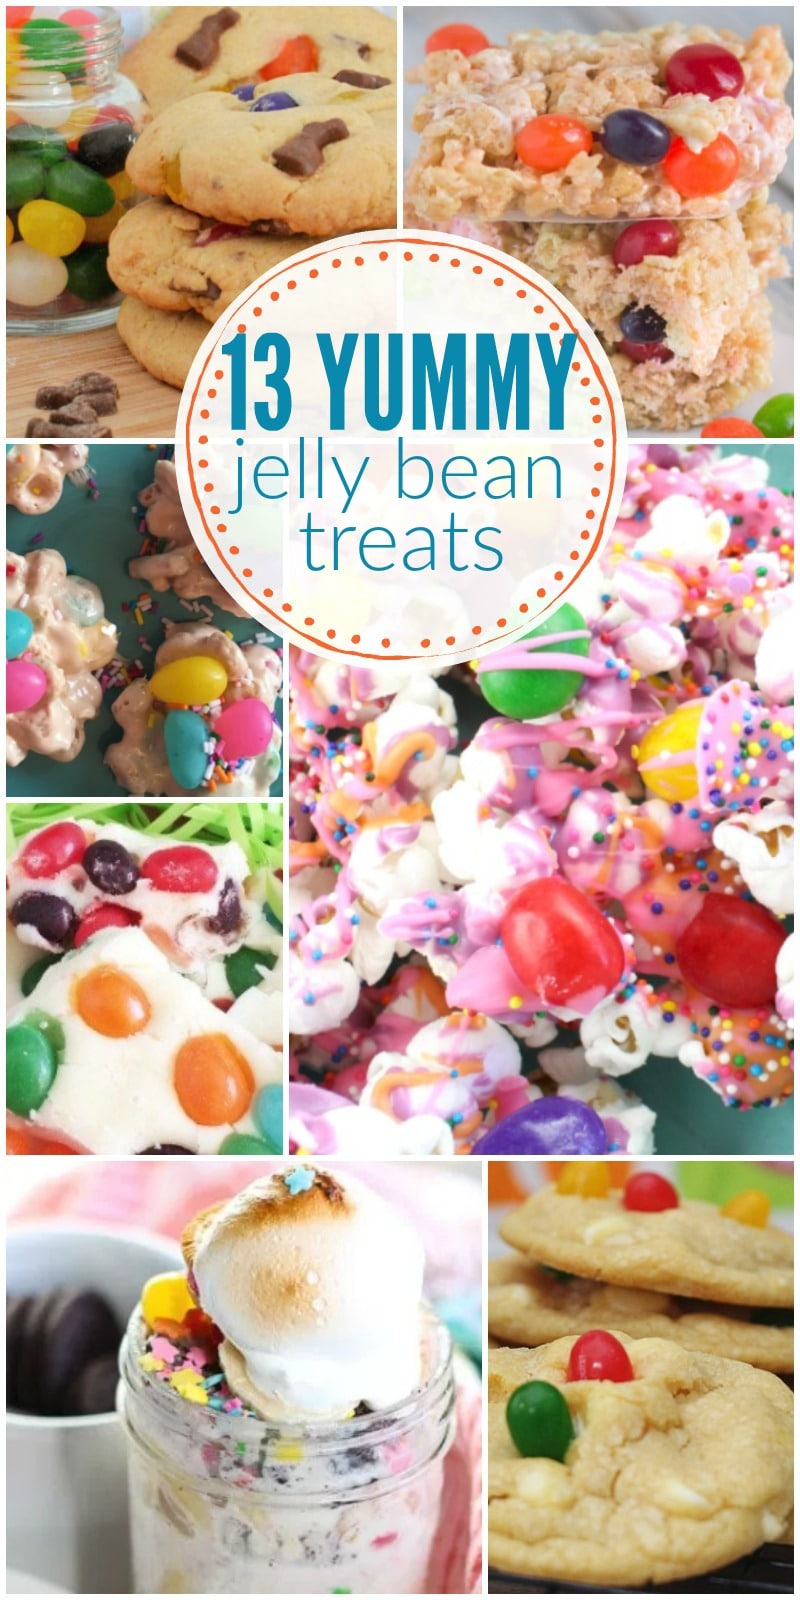 Jelly bean recipes